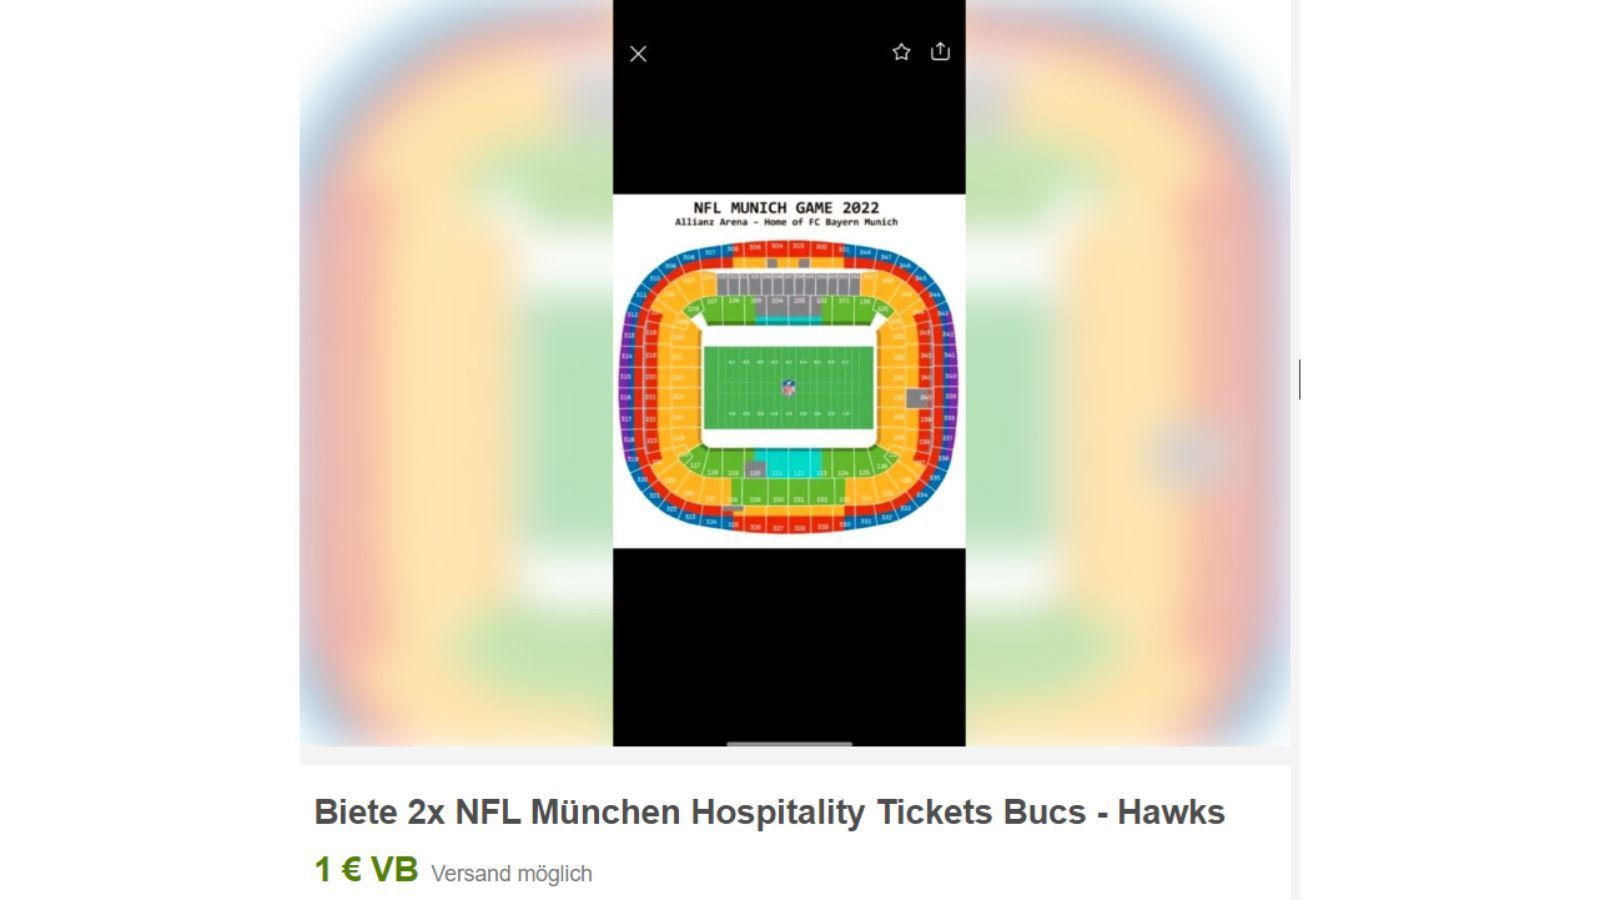 
                <strong>Horrende eBay-Angebote für das NFL-Spiel in Deutschland</strong><br>
                Verlockendes Angebot für einen Euro. Leider auf Verhandlungsbasis.
              